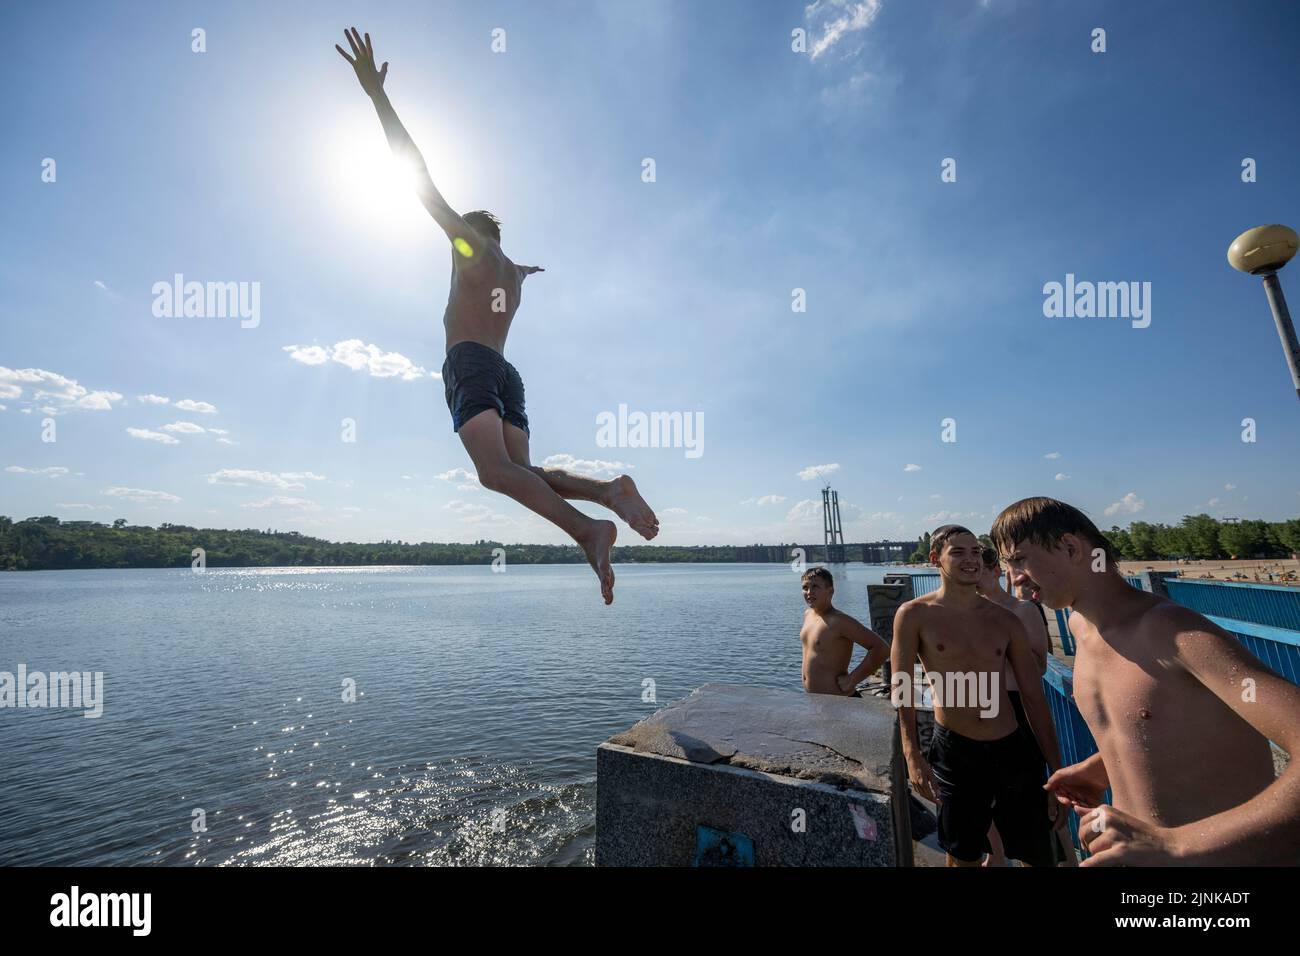 La photo montre des adolescents qui s'amusent en sautant sur un quai dans la rivière Dnipro à Zaporizhzhia en Ukraine Banque D'Images